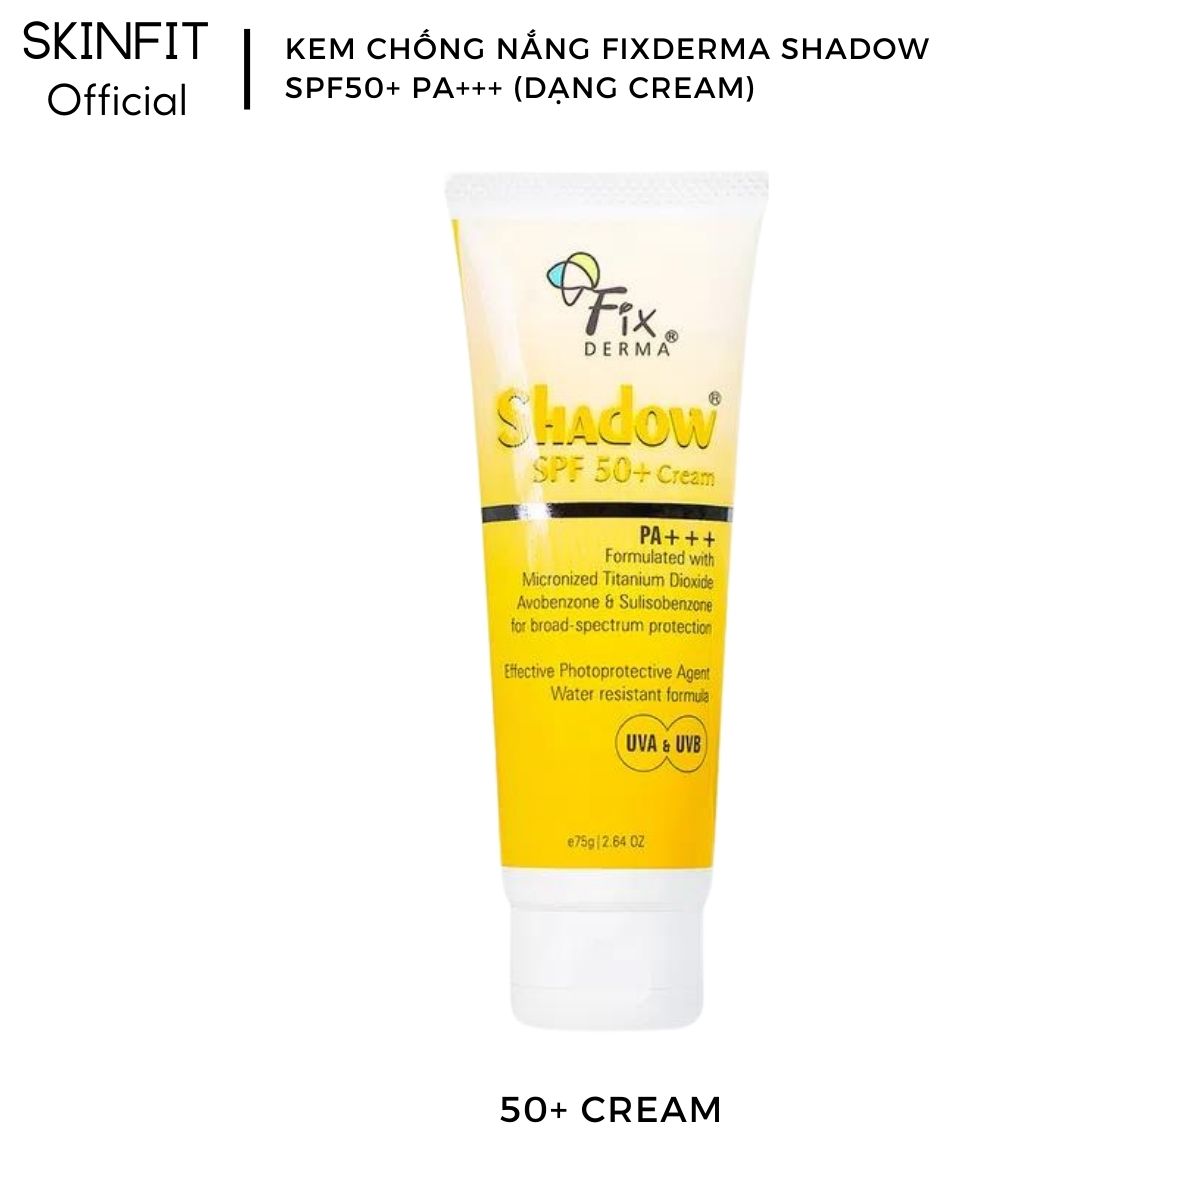 [Hàng chính hãng] Kem chống nắng cho da mặt da dầu mụn Fixderma Shadow SPF 50+ Cream. Kem chống nắng fixderma shadow chống nắng toàn thân hiệu quả hơn xịt chống nắng SKINFIT Offical